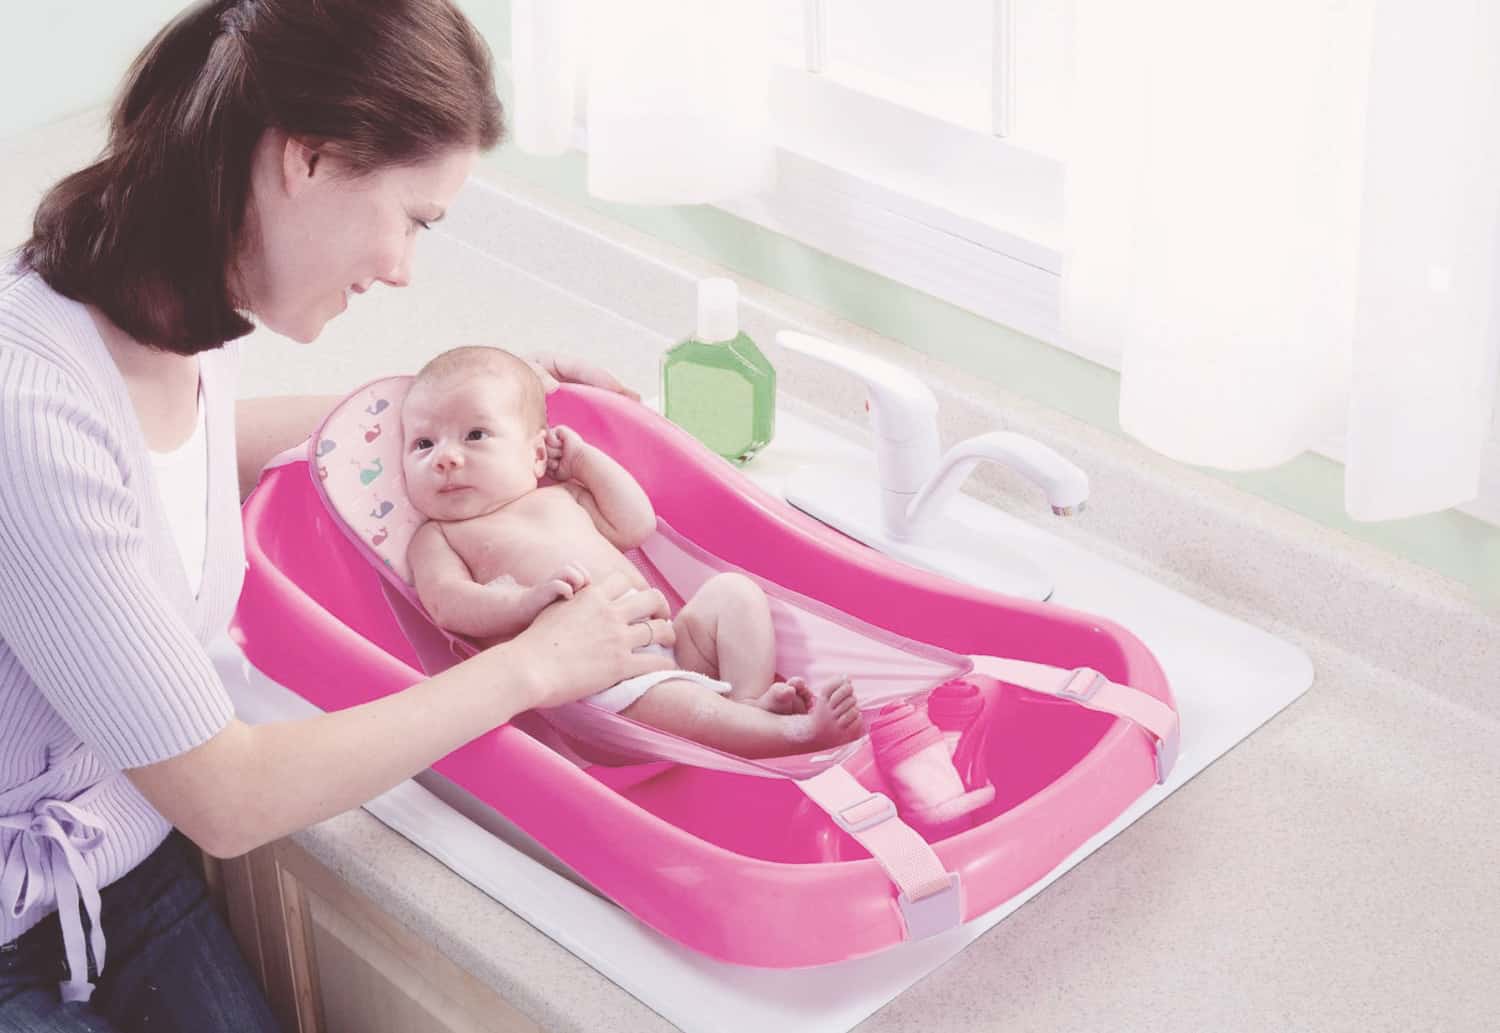 baby bath tub in kitchen sink